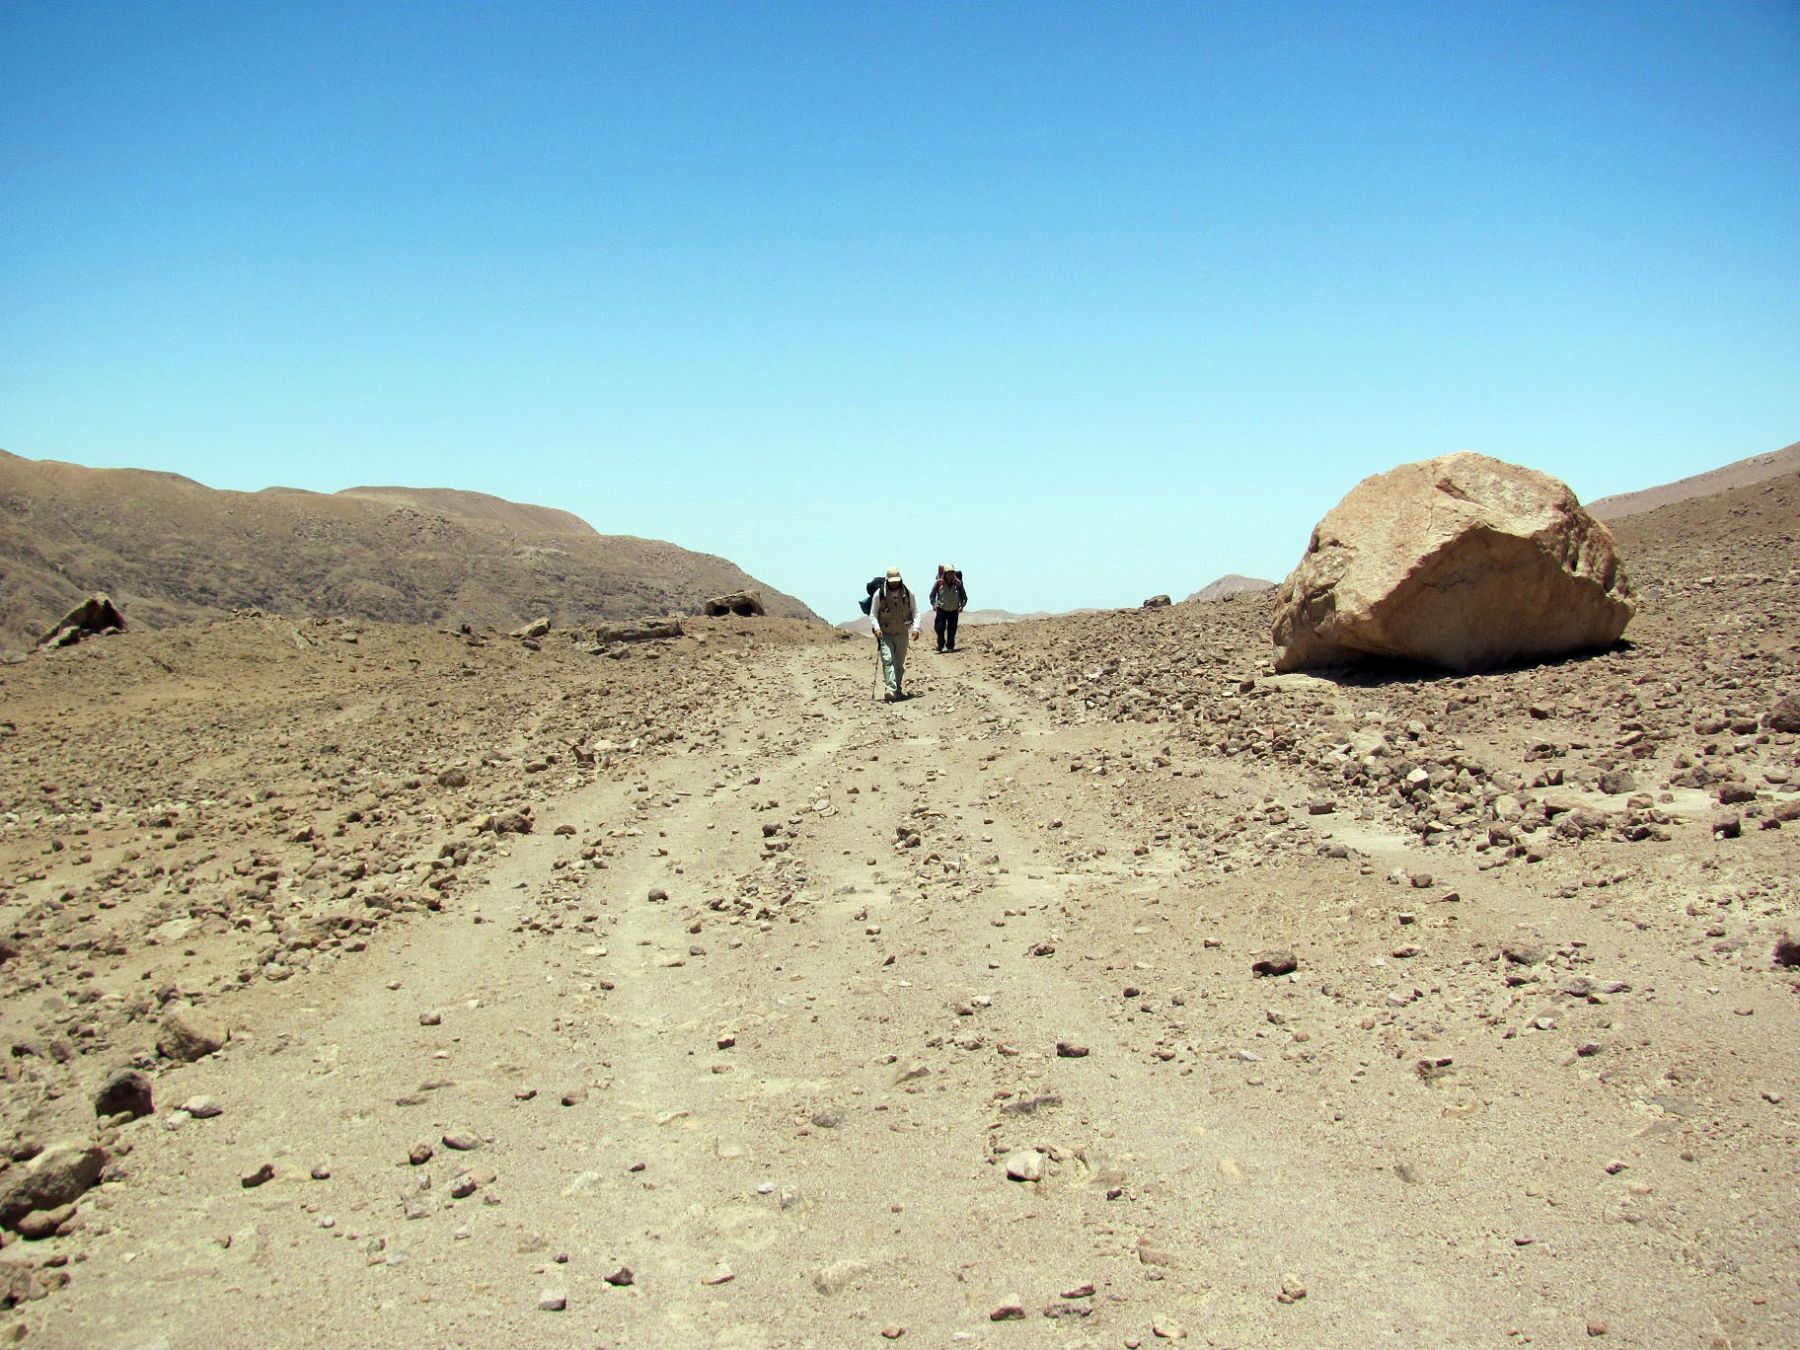 El camino inca descubierto recorre los distritos de Pocollay y Tacna, en la región Tacna.